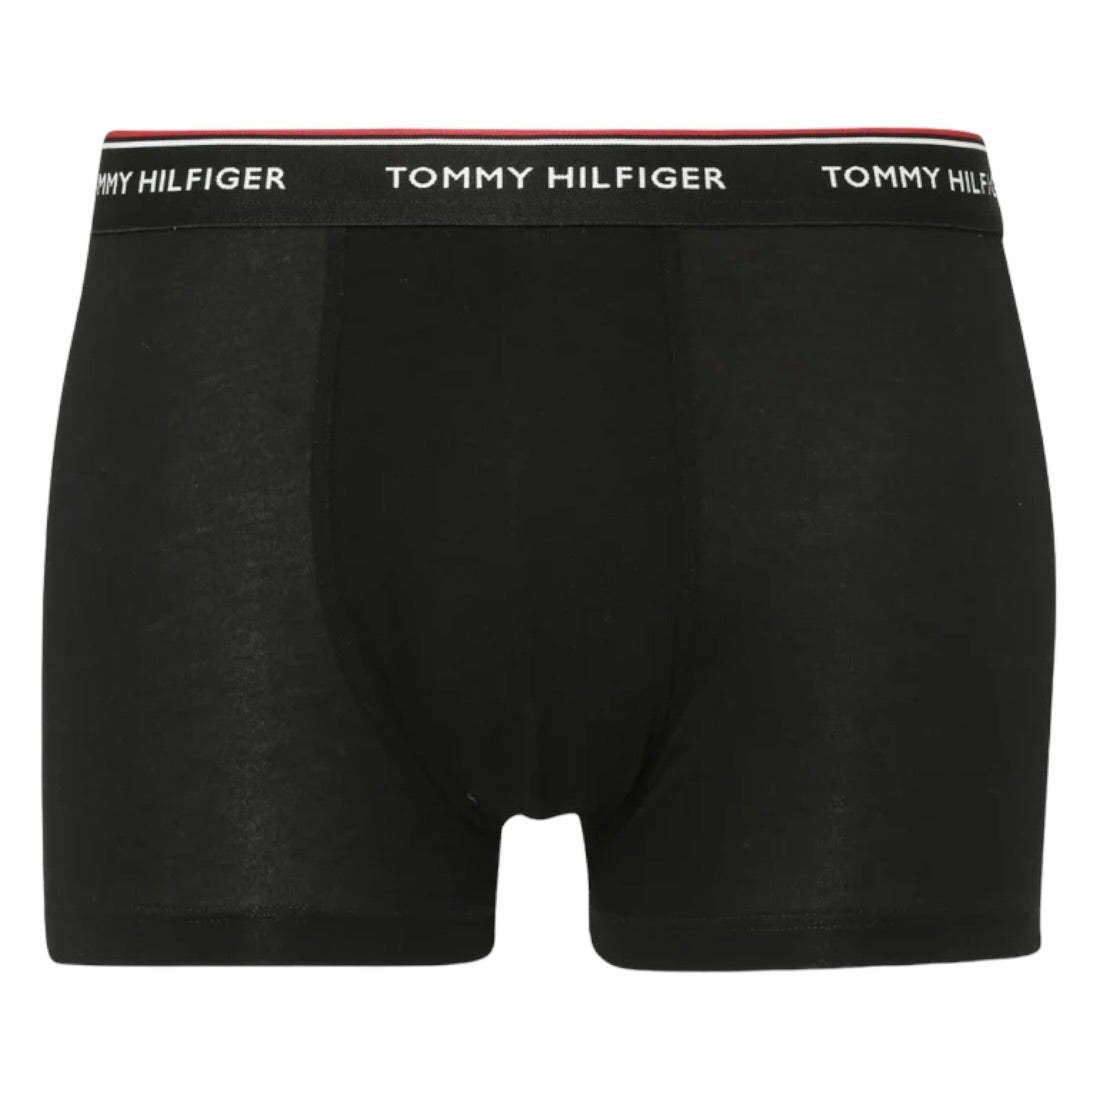 Tommy Hilfiger - Lot de 3 boxers essentiels de qualité supérieure